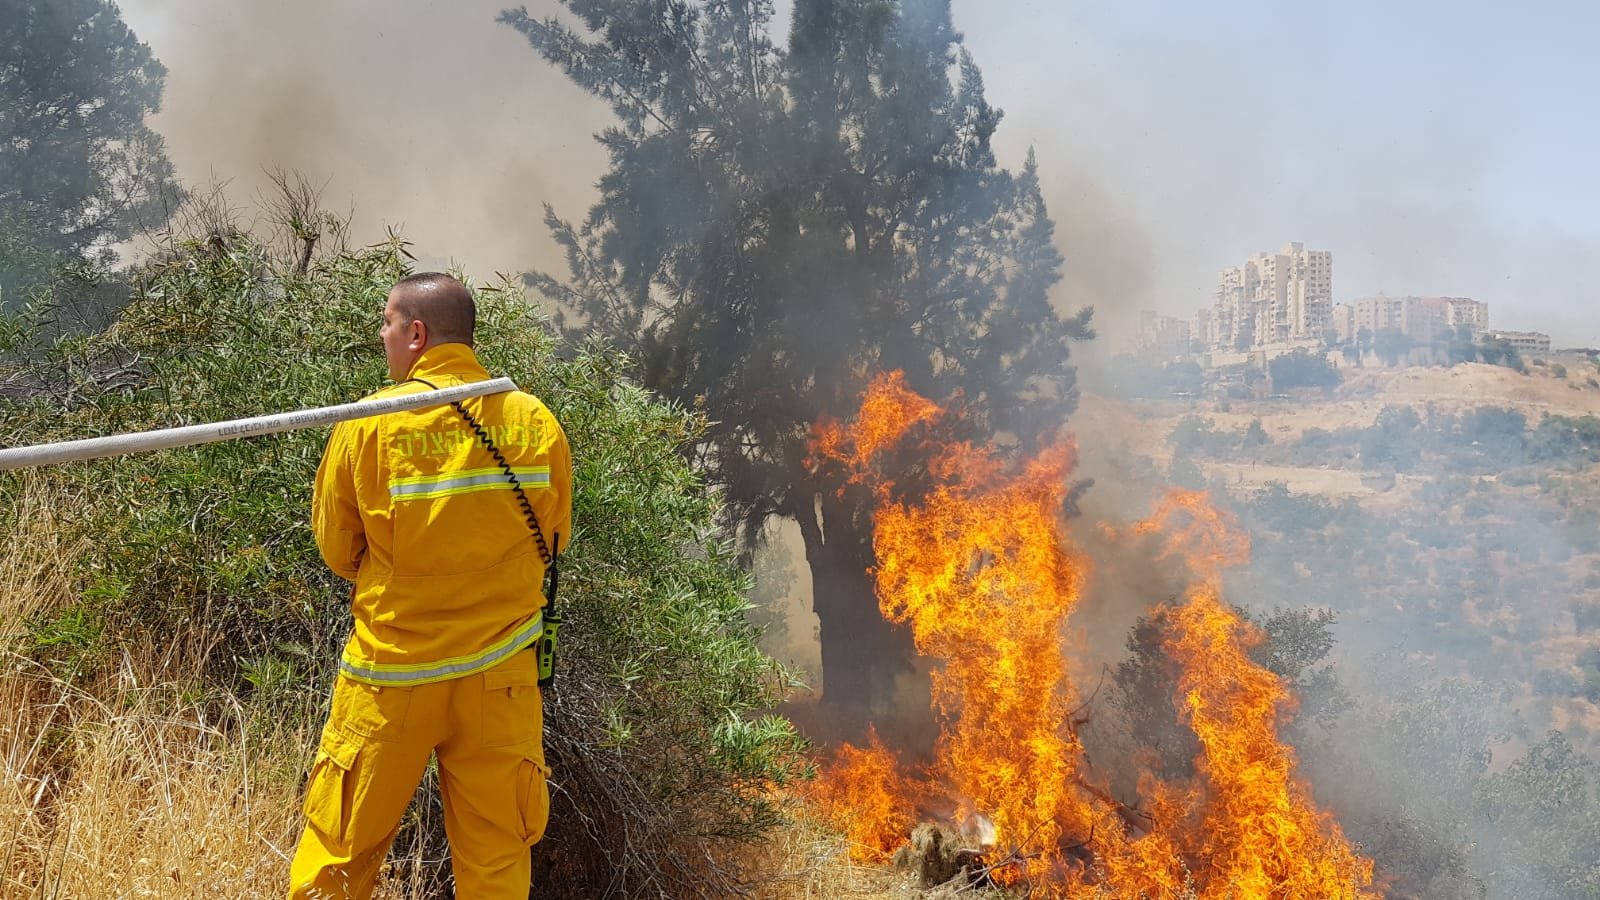 قائد سلطة الاطفاء والانقاذ يصدر أمرًا رسميًا يمنع اشعال النار في المناطق المفتوحة خلال أشهر الصيف في كافة أنحاء البلاد-0